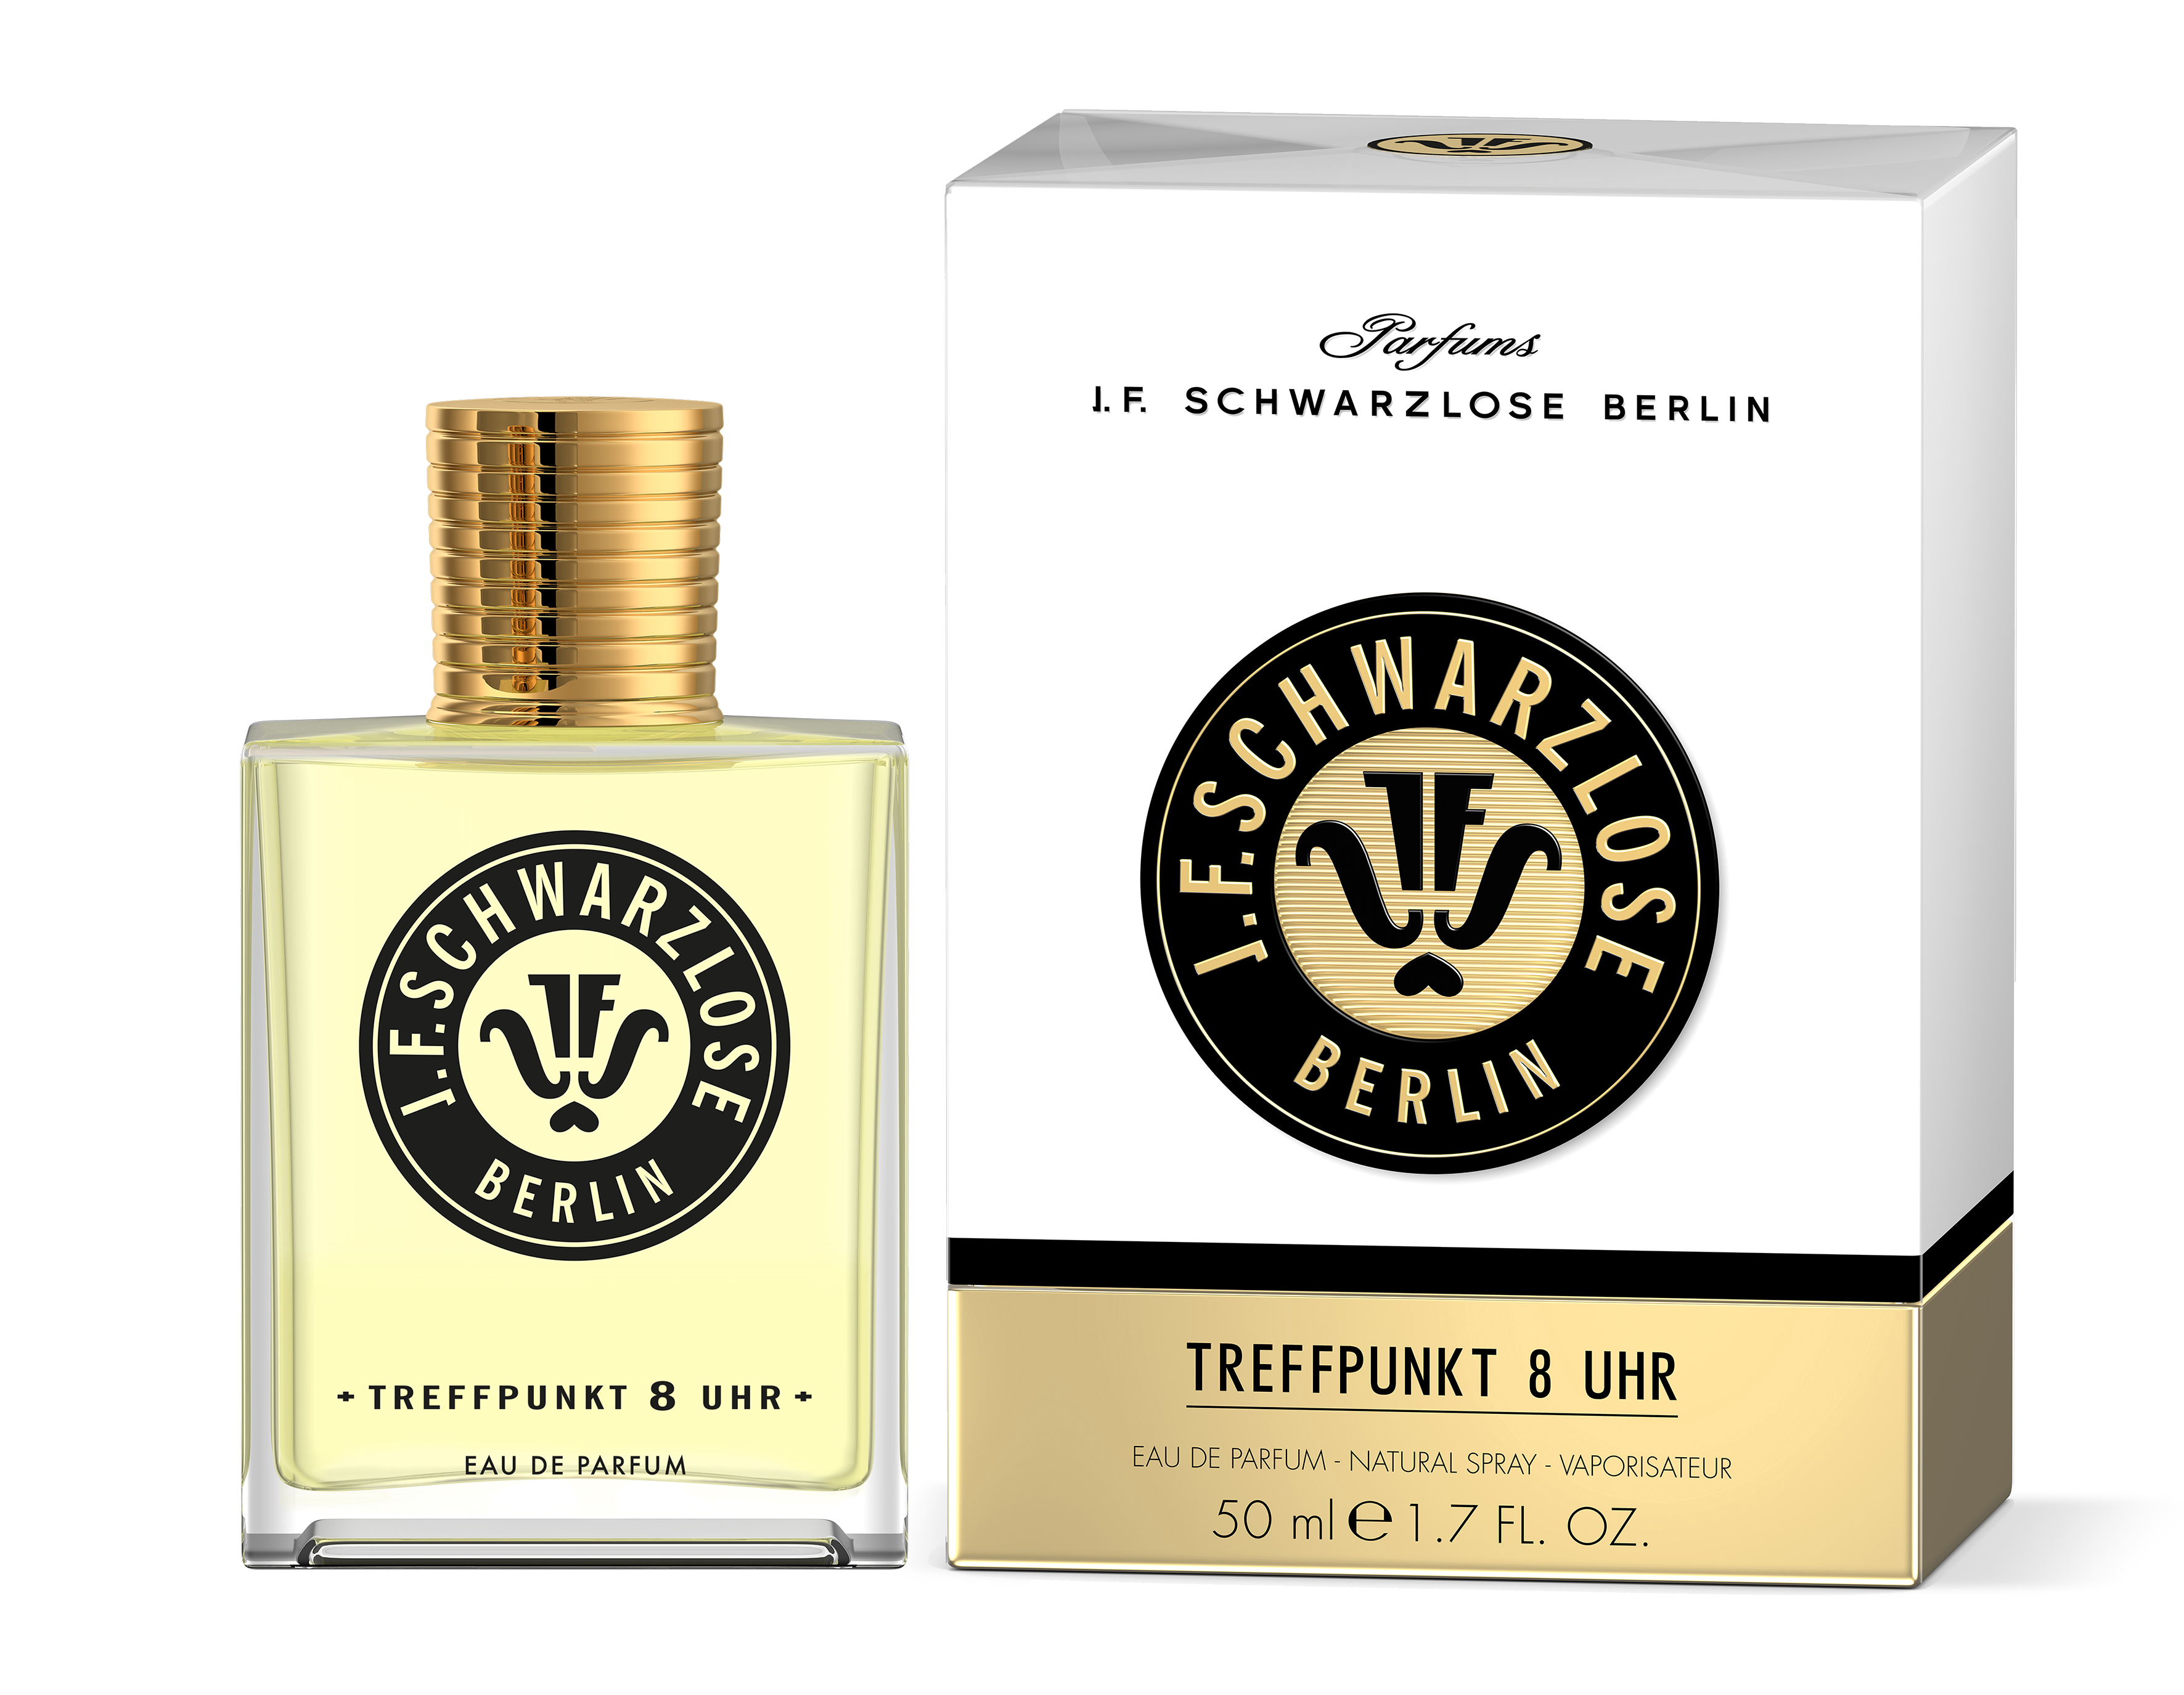 J.F. Schwarzlose Berlin TREFFPUNKT 8 UHR Eau de Parfum